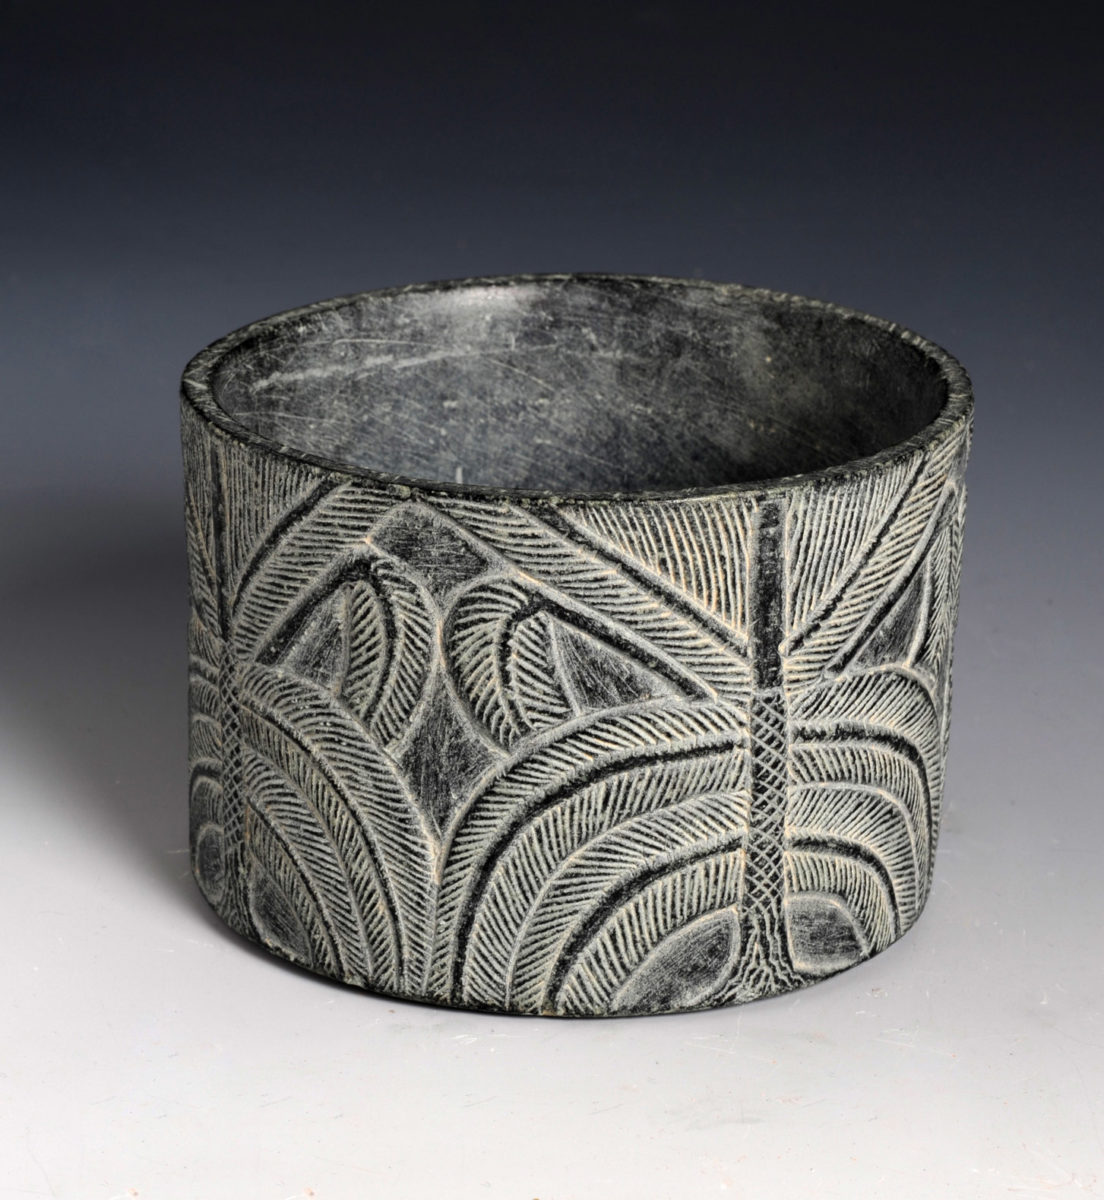 Κυλινδρικό αγγείο με φοίνικα. Τέλη 3ης χιλιετίας π.Χ. 
Χλωρίτης. Εθνικό Μουσείο, Ριάντ.